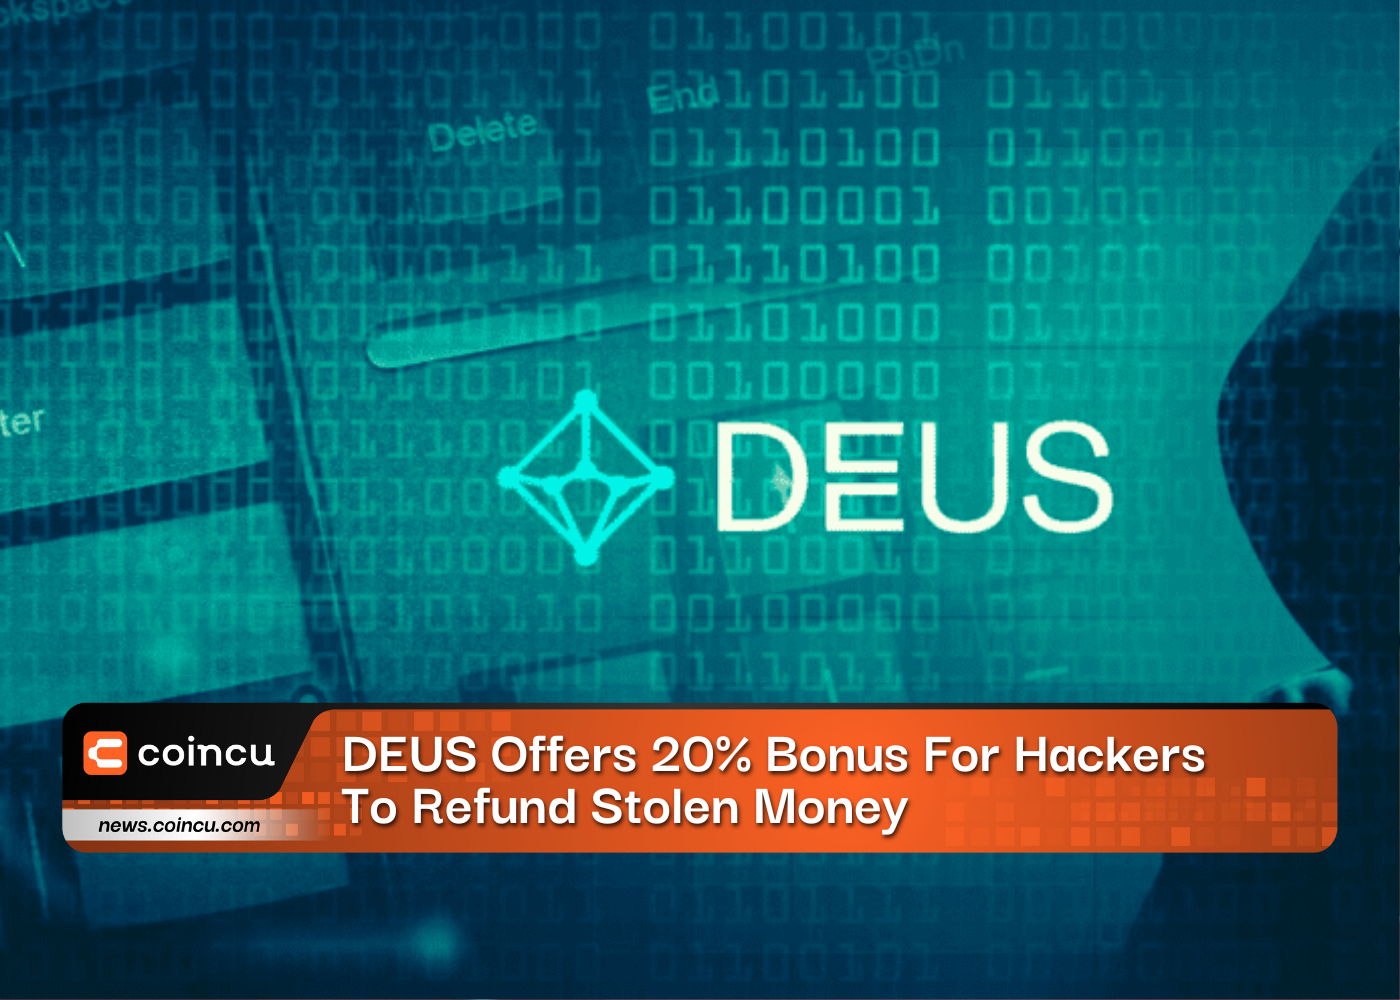 DEUS Offers 20% Bonus For Hackers To Refund Stolen Money